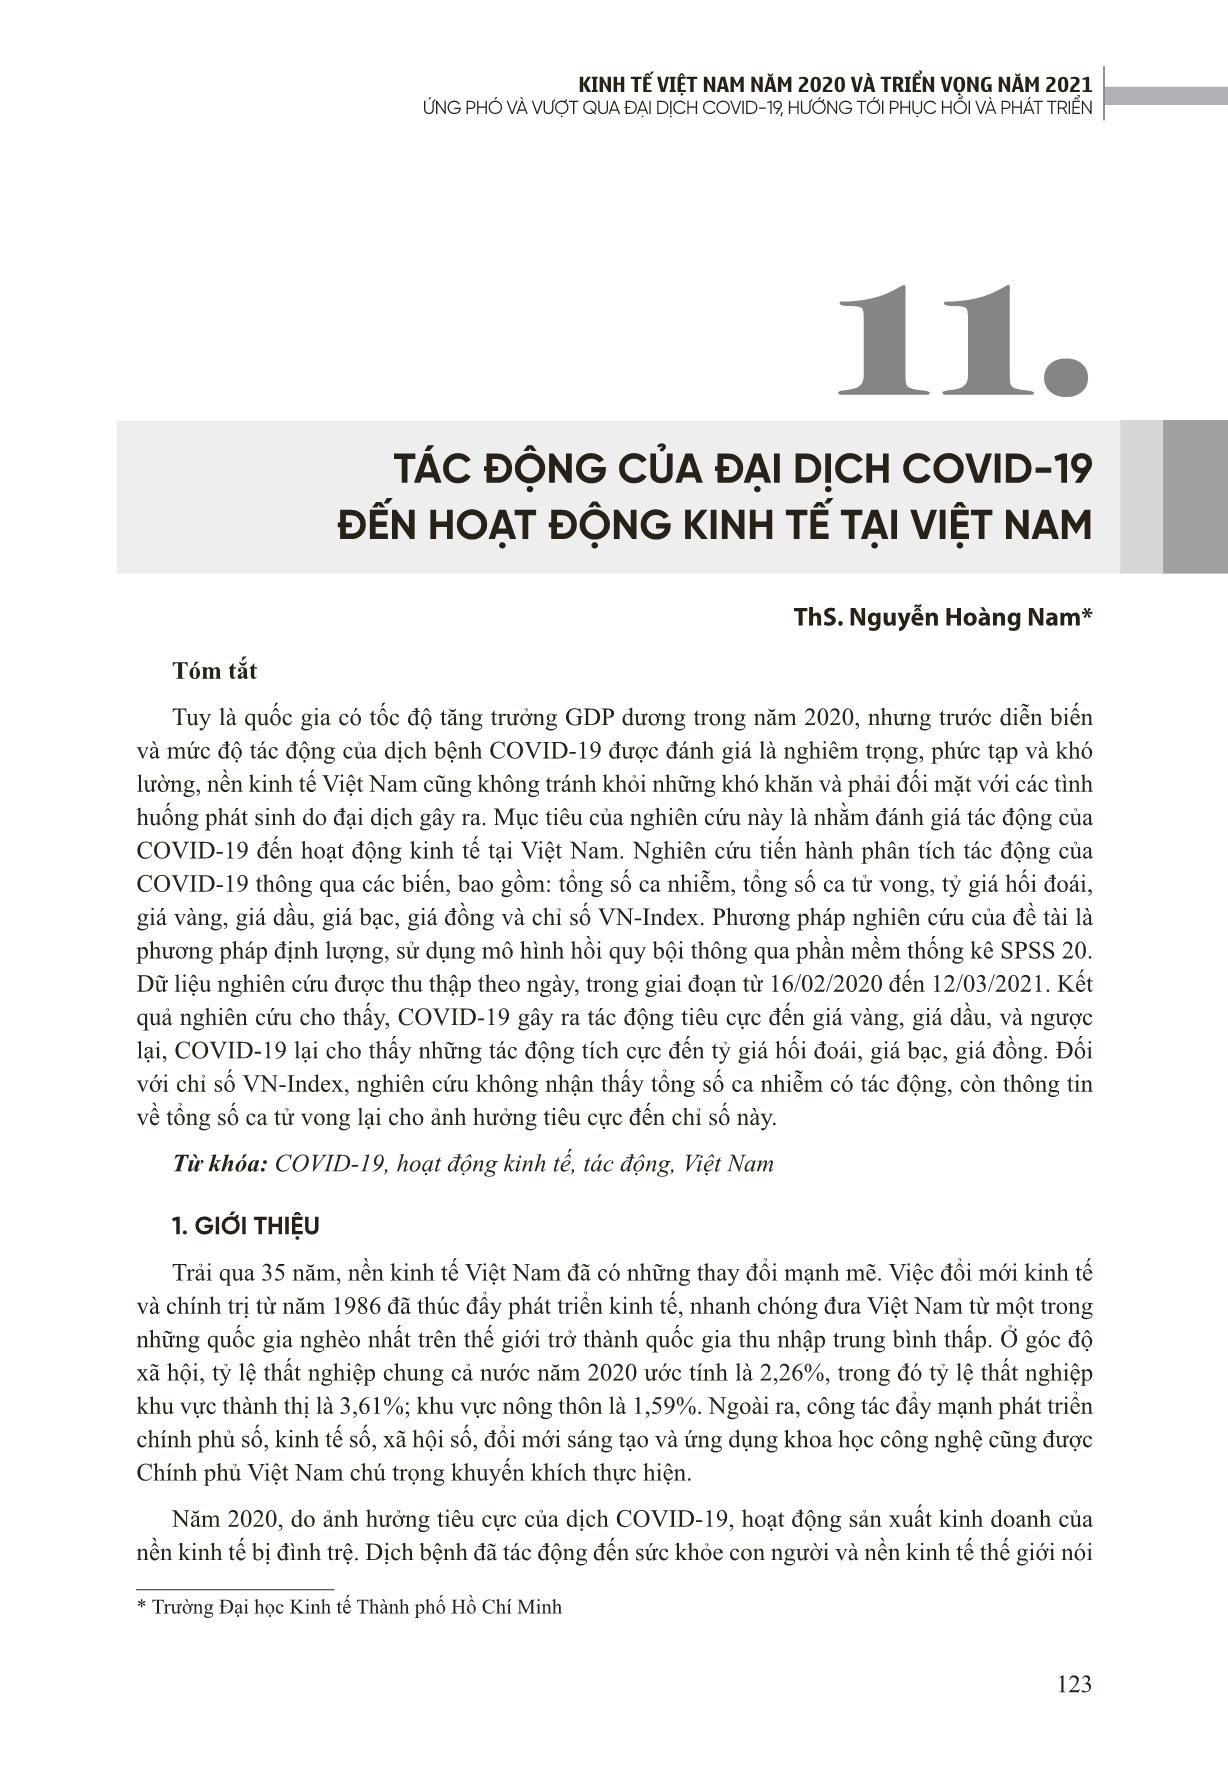 Tác động của đại dịch Covid-19 đến hoạt động kinh tế tại Việt Nam trang 1